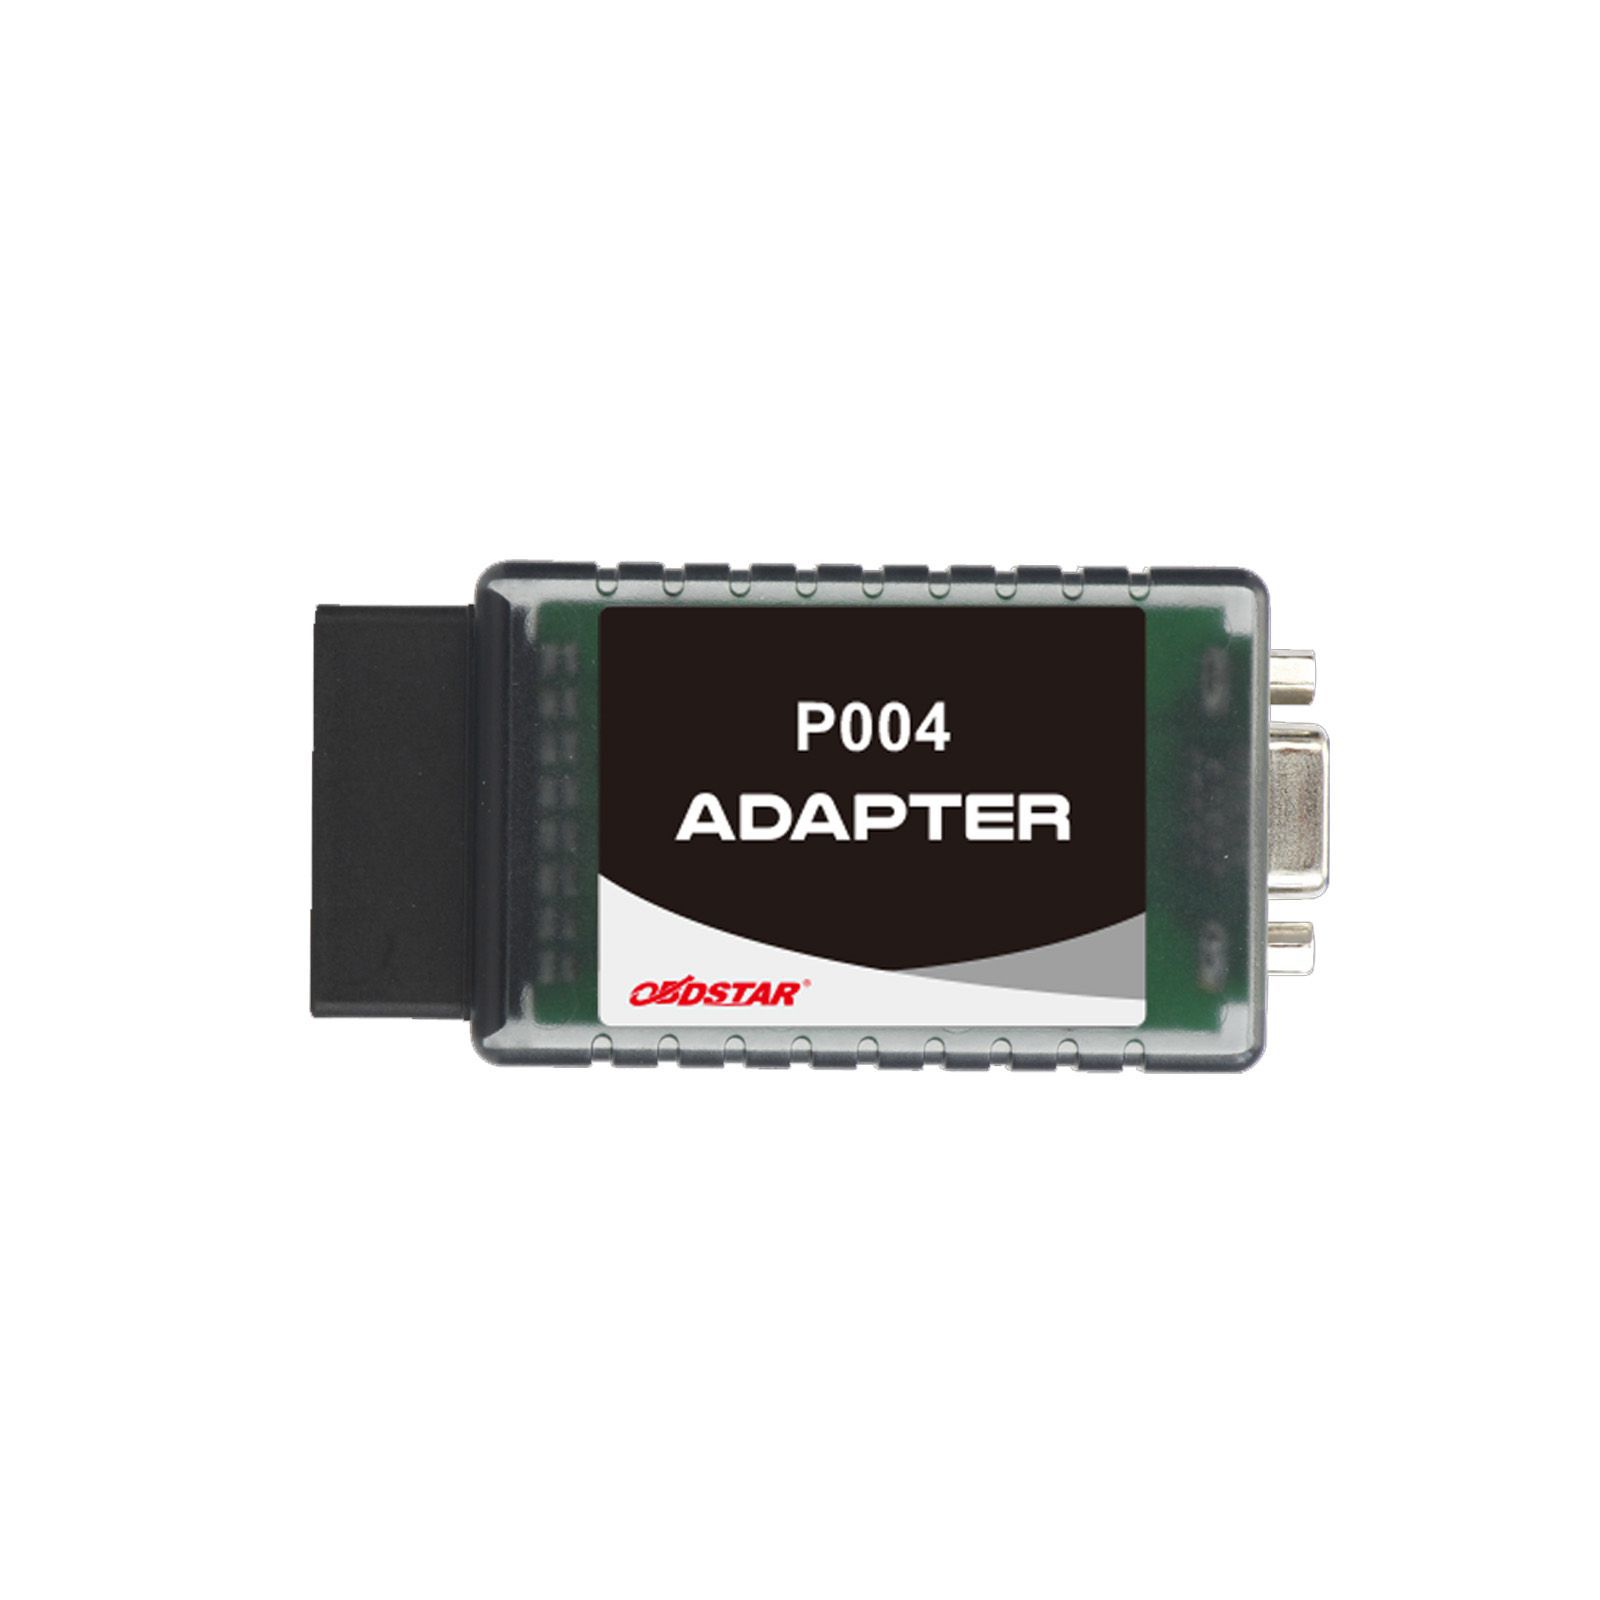 Adapter OBDSTAR P004 für ECU-Programmierung Lesen oder Schreiben von Daten im Bench-Modus verwendet mit X300 DP Plus/OdoMaster/P50